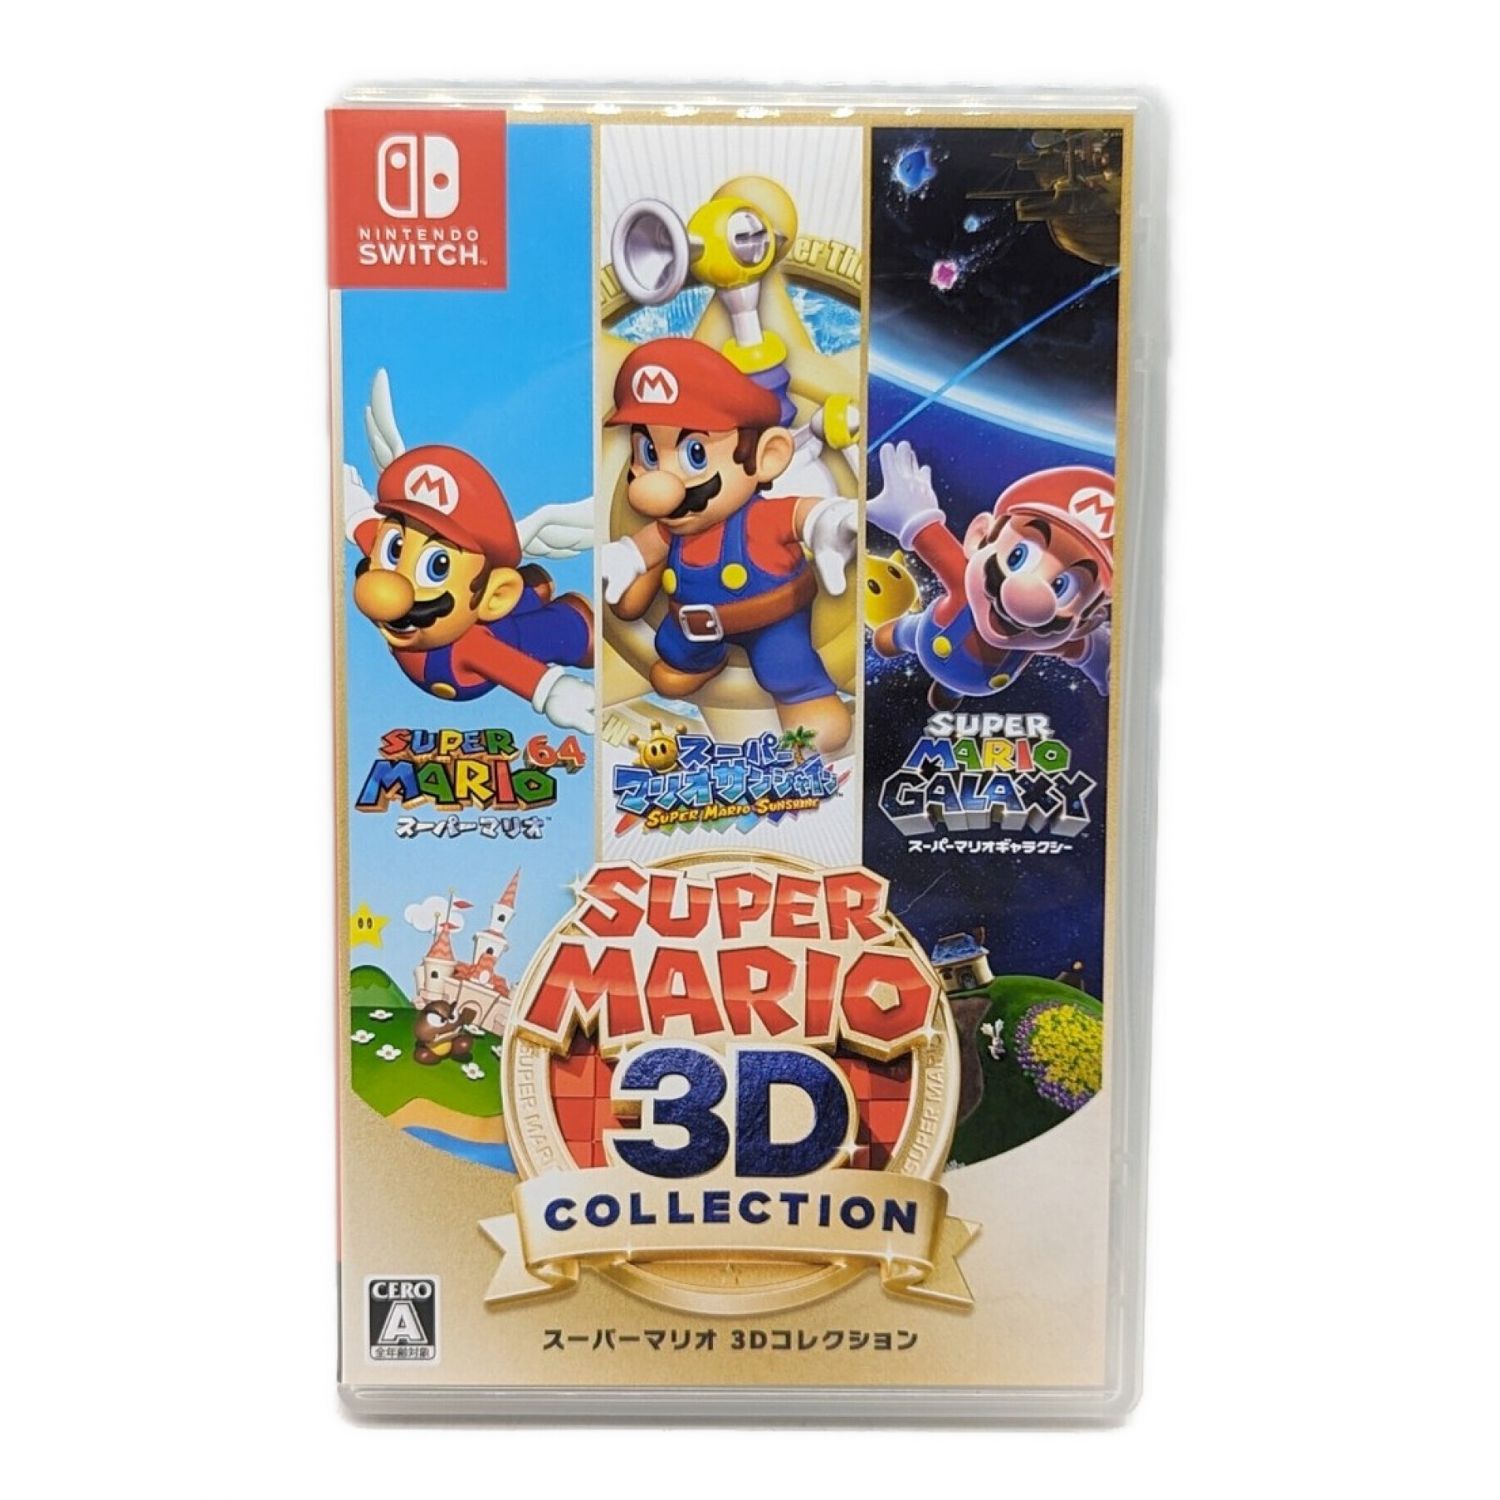 Nintendo Switch用ソフト スーパーマリオ 3Dコレクション CERO A (全 